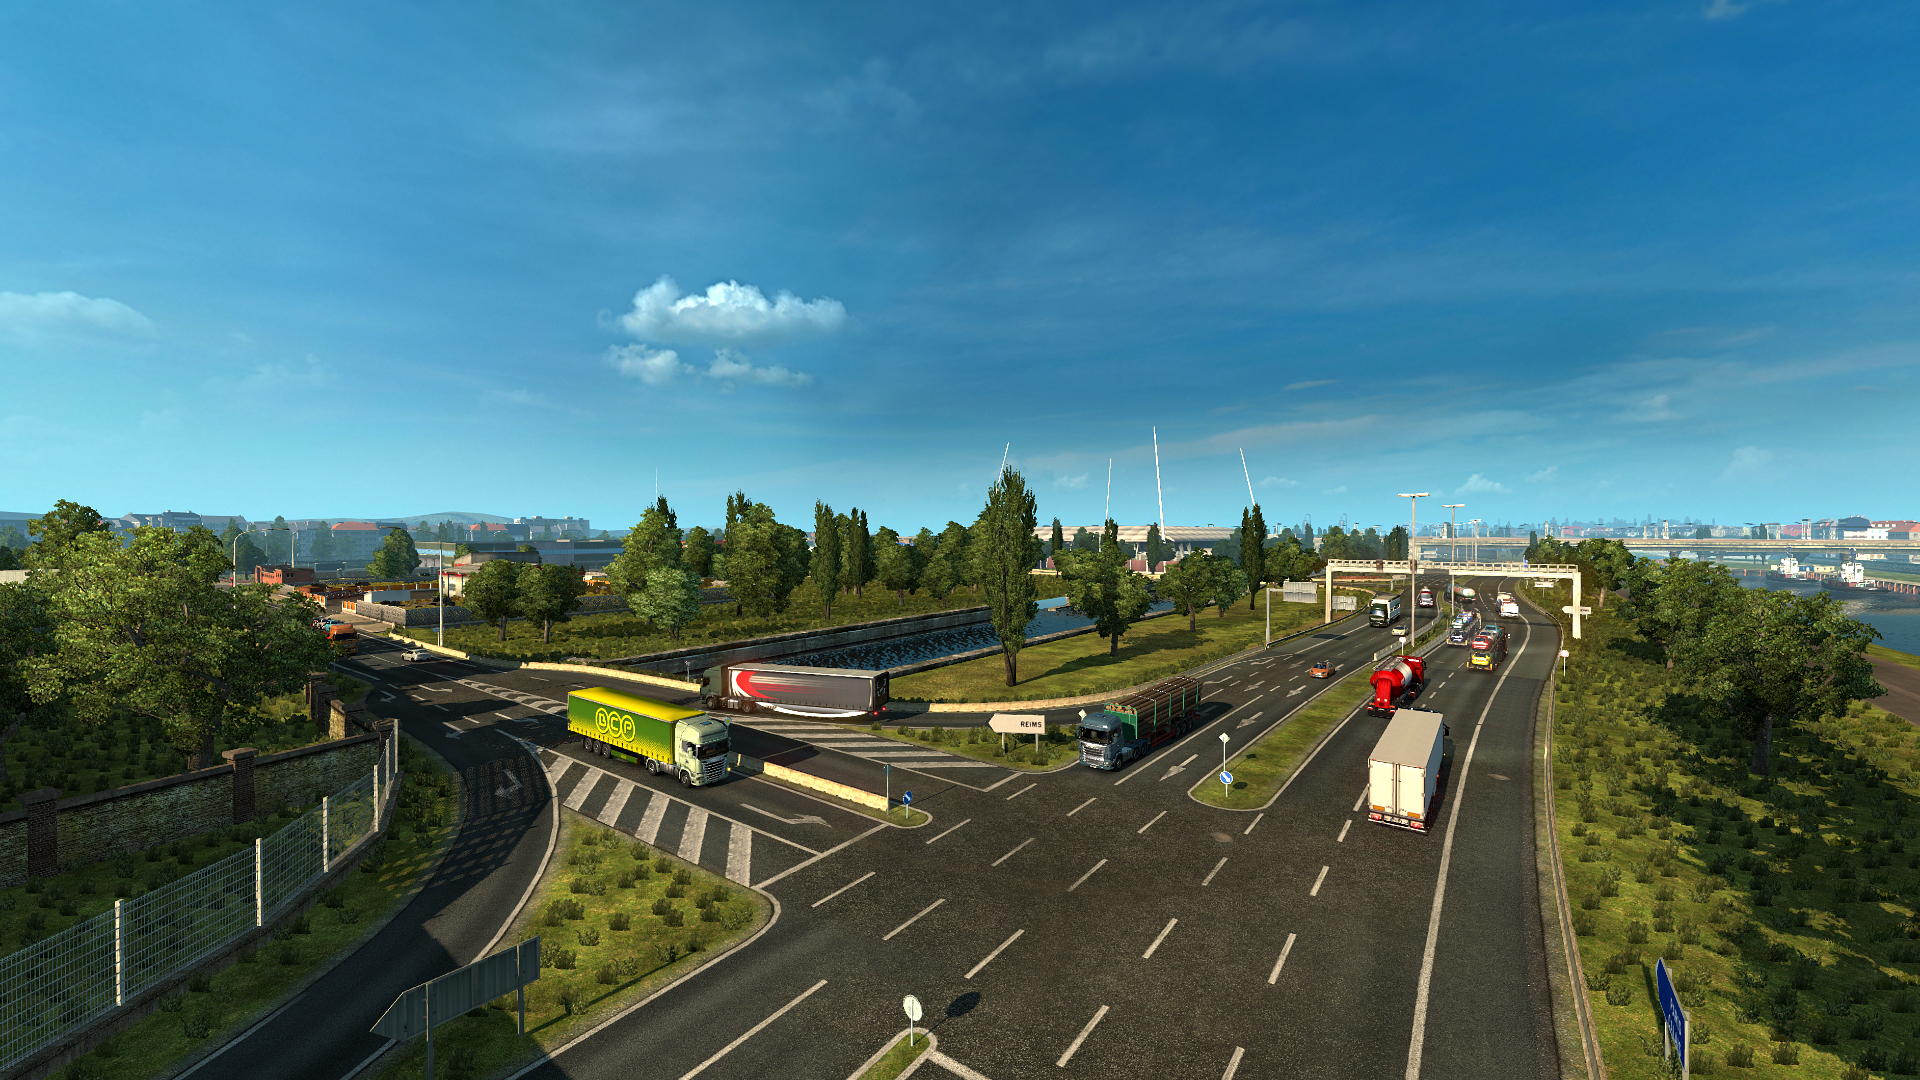 Euro truck simulator 2 demo download mac os